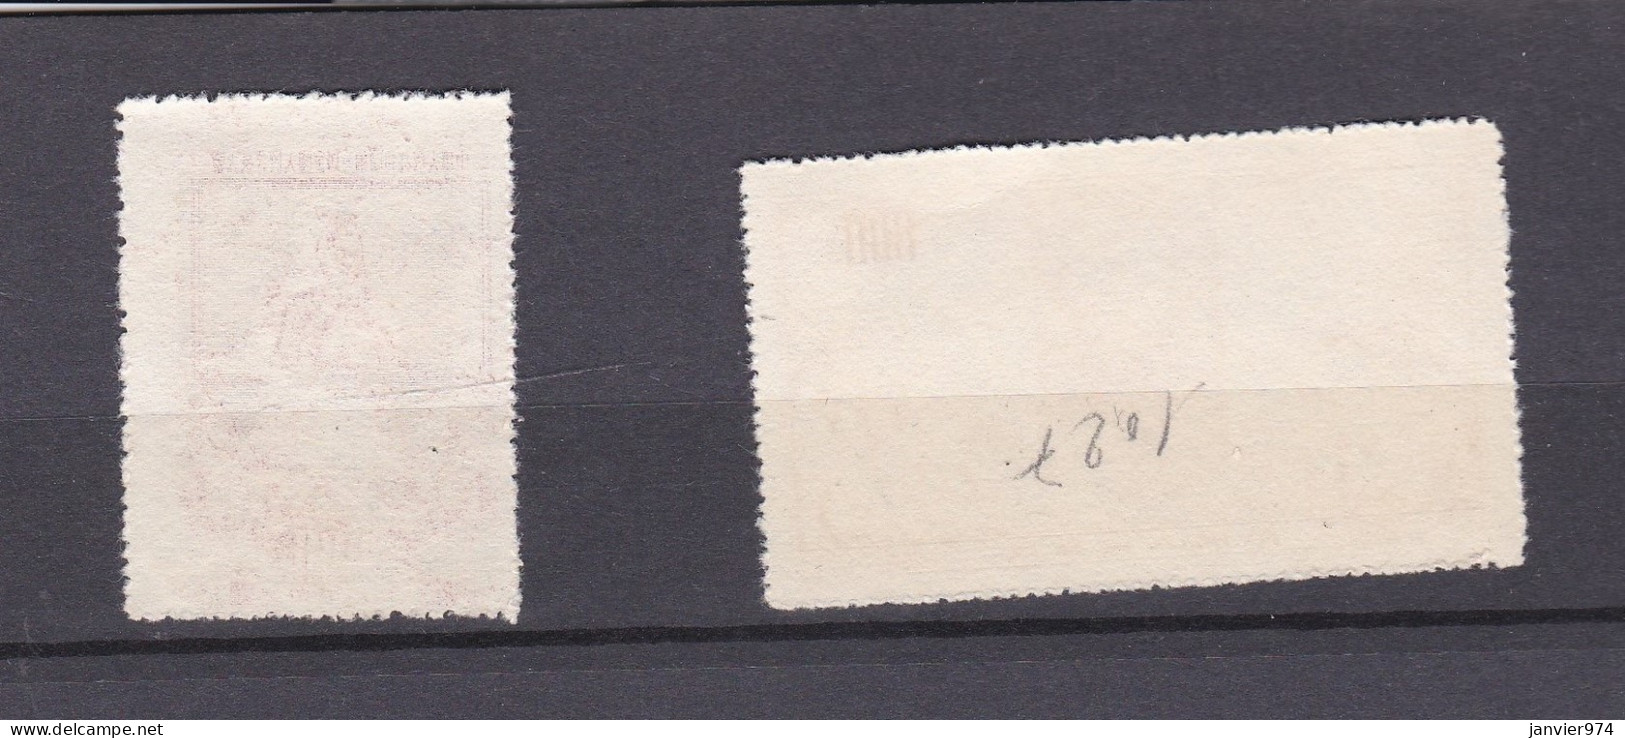 Chine 1954 , La Serie Complete Séance Du Congrès National, 2 Timbres Neufs , 261 – 262  - Unused Stamps